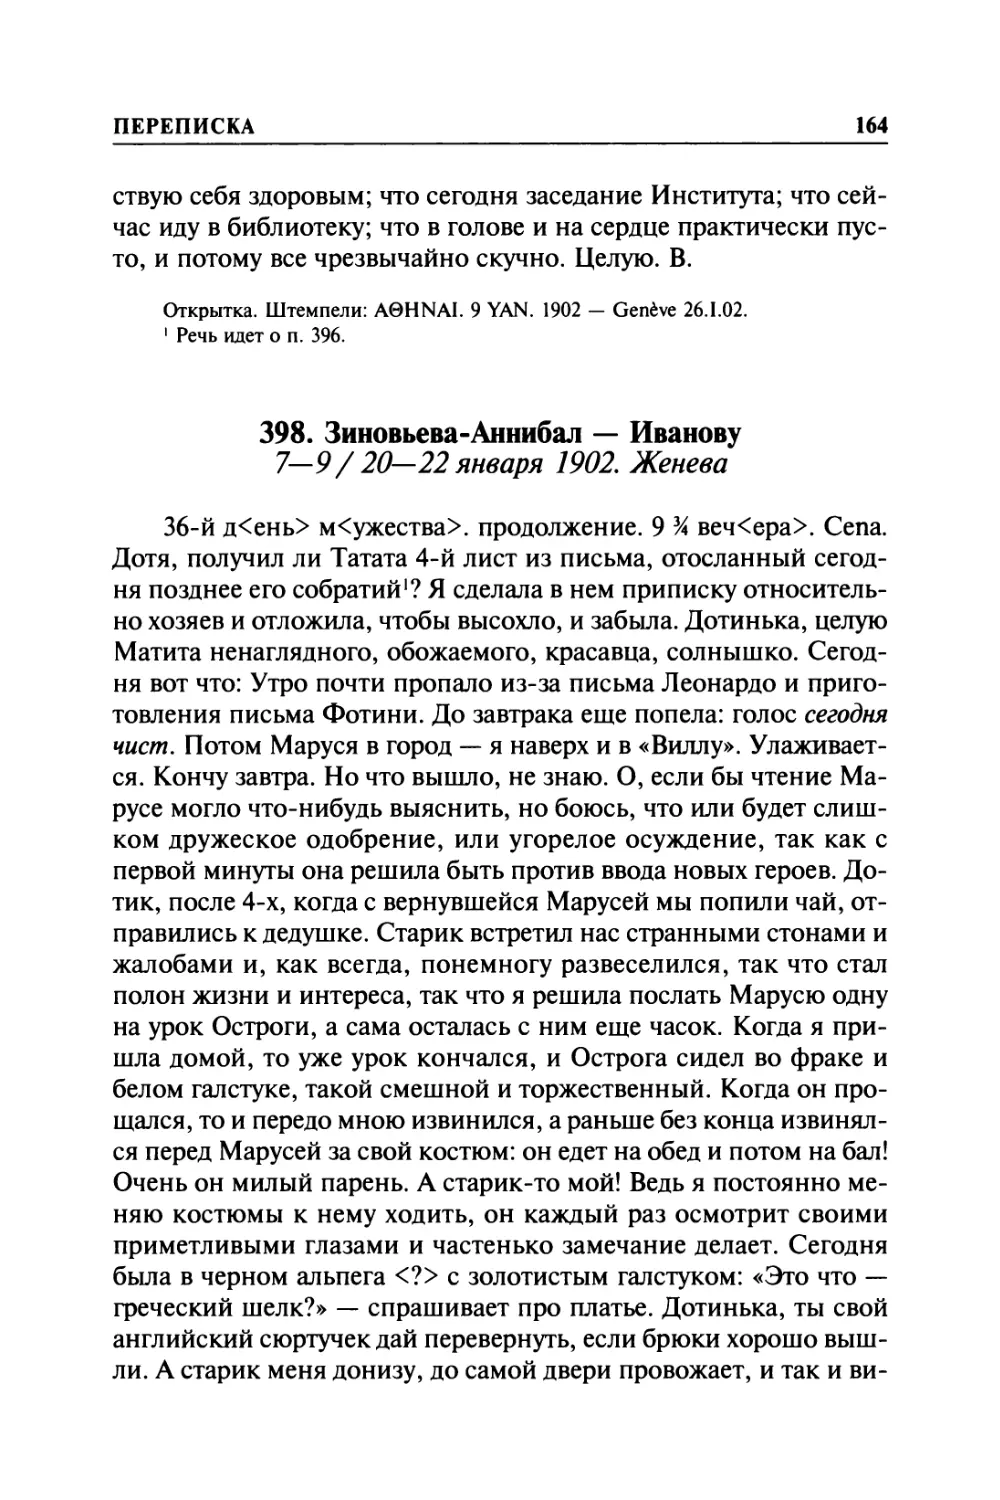 398. Зиновьева-Аннибал — Иванову. 7—9 / 20—22 января 1902. Женева